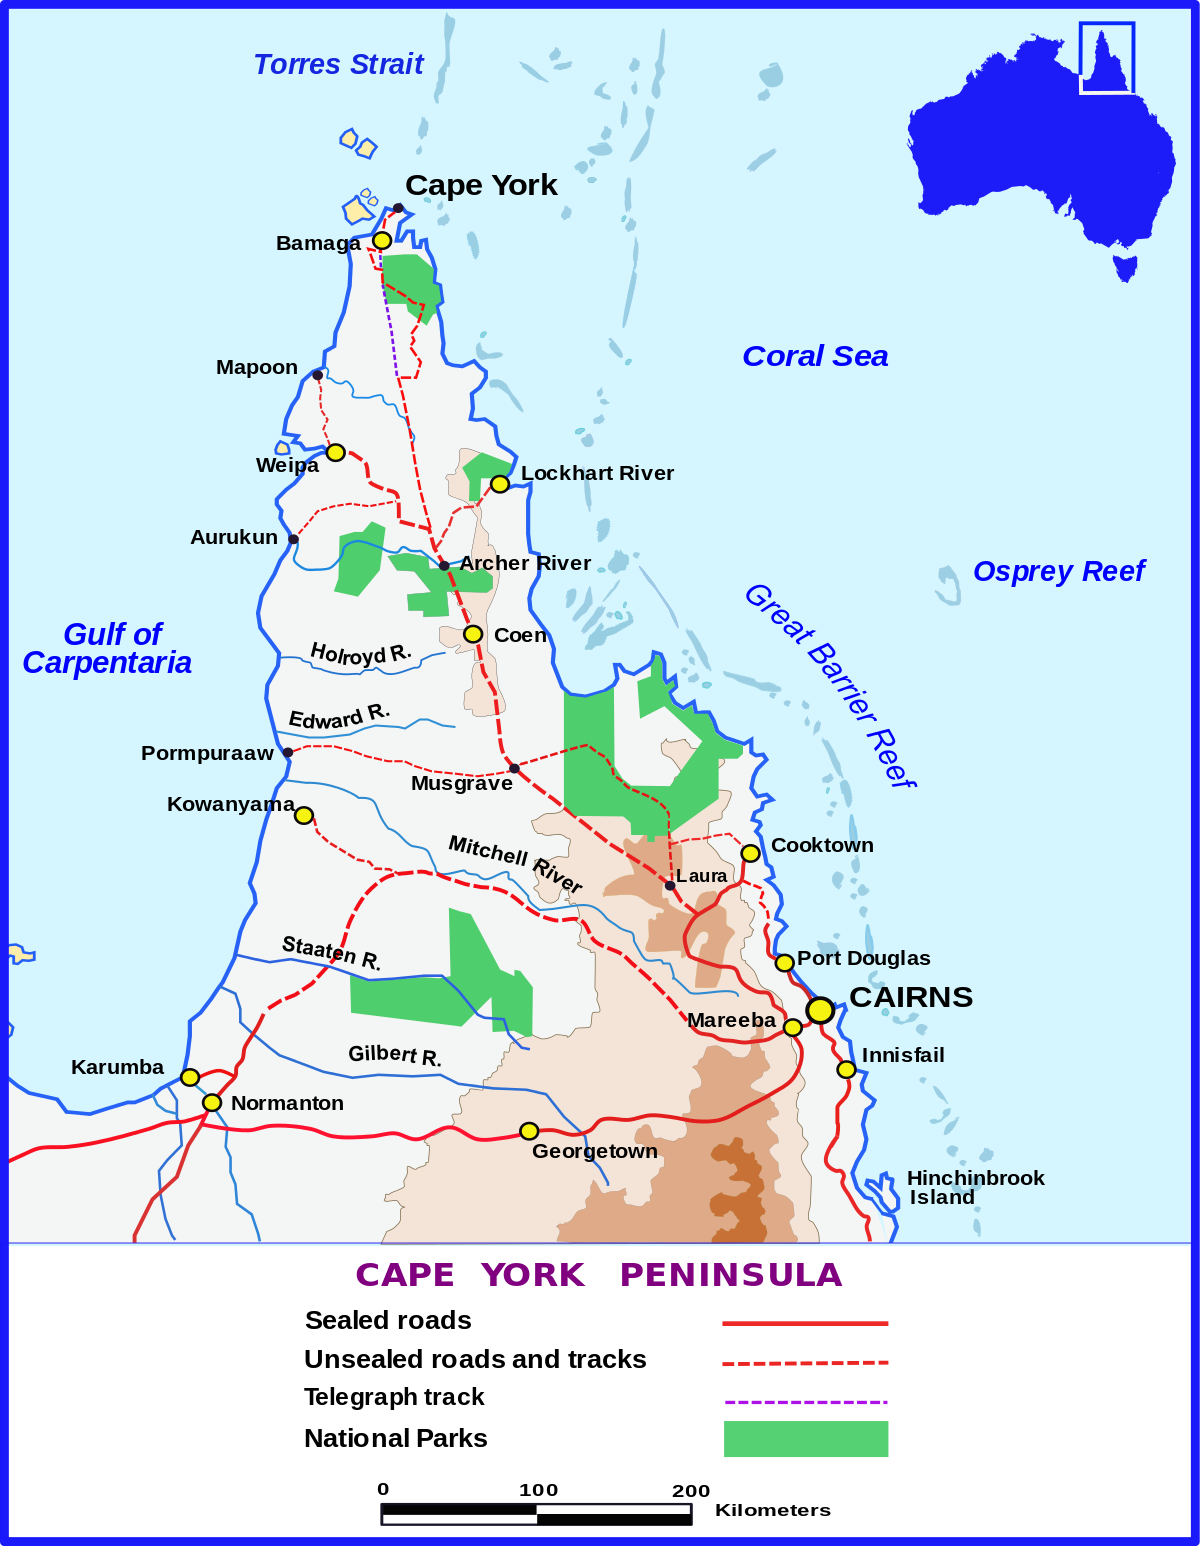 cape york peninsula map Cape York Peninsula Wikipedia cape york peninsula map